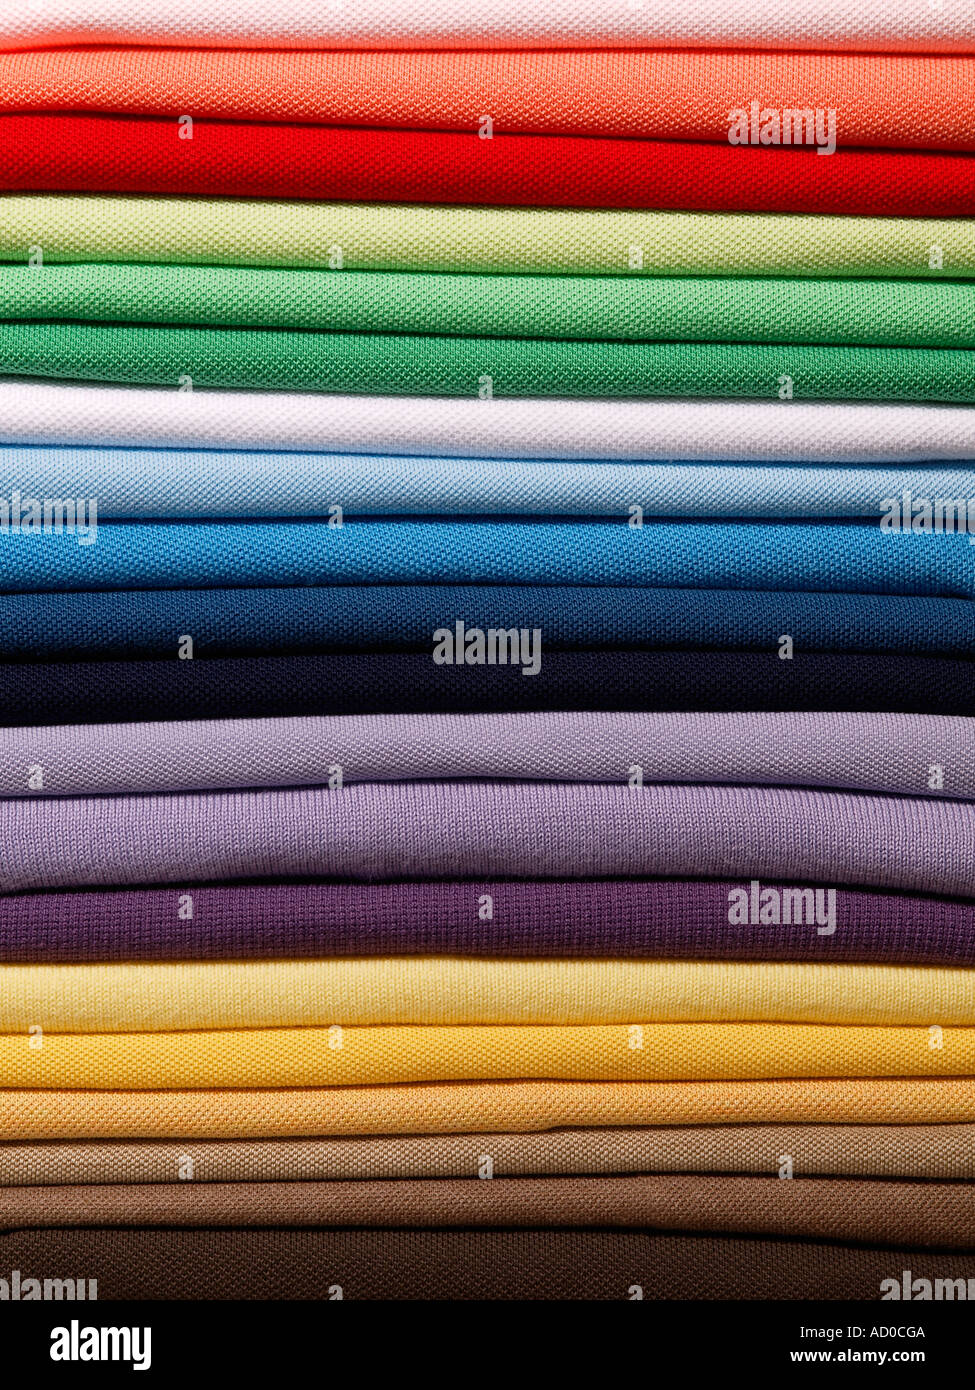 Pile pile de coton piqué mens poloshirts couleurs assorties Banque D'Images